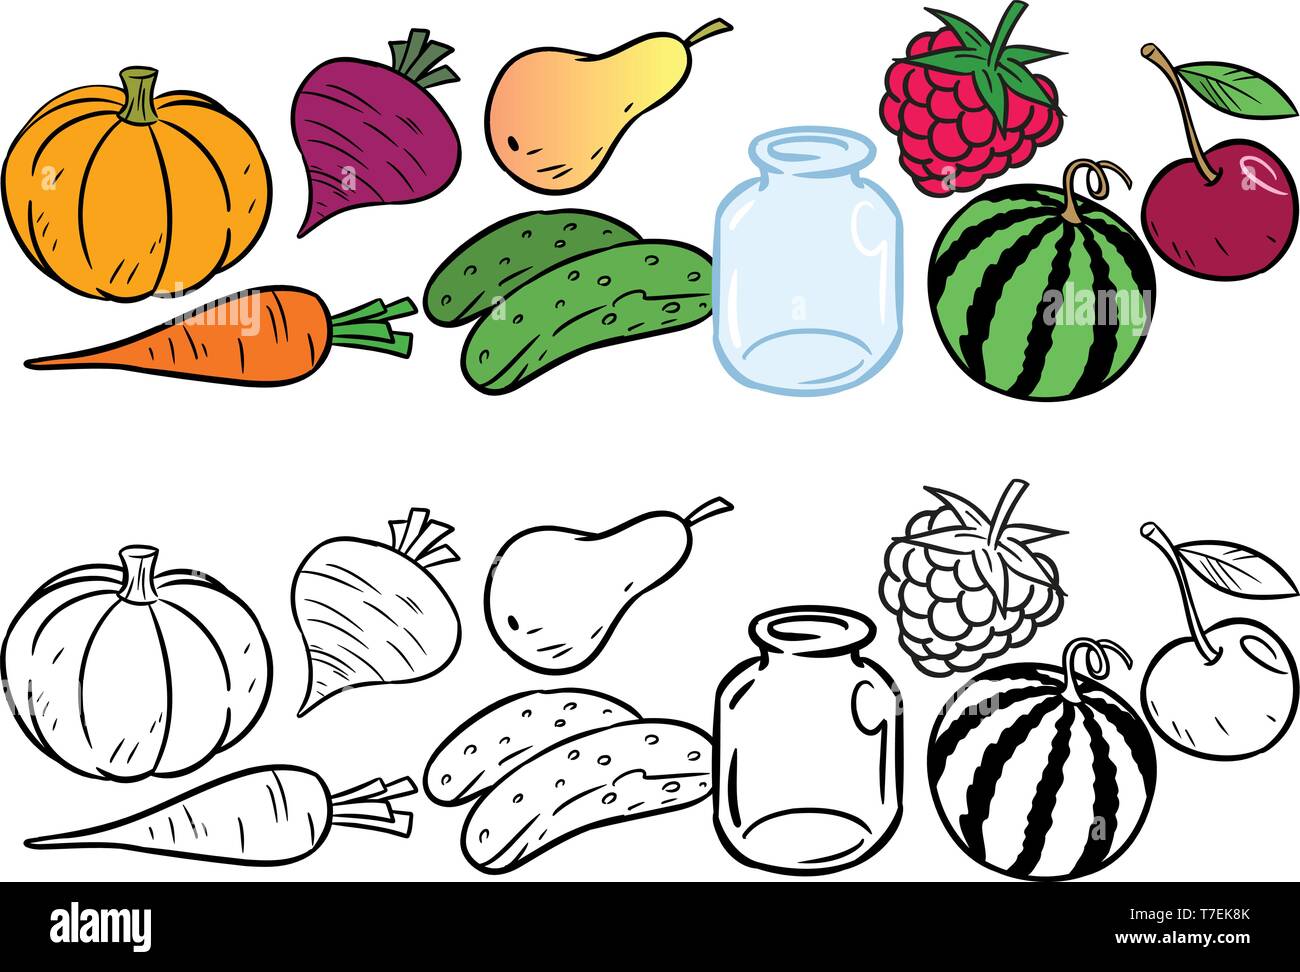 L'illustration montre un ensemble de différents types de légumes et fruits. Un contour noir est fait pour un livre de coloriage. Illustration de Vecteur